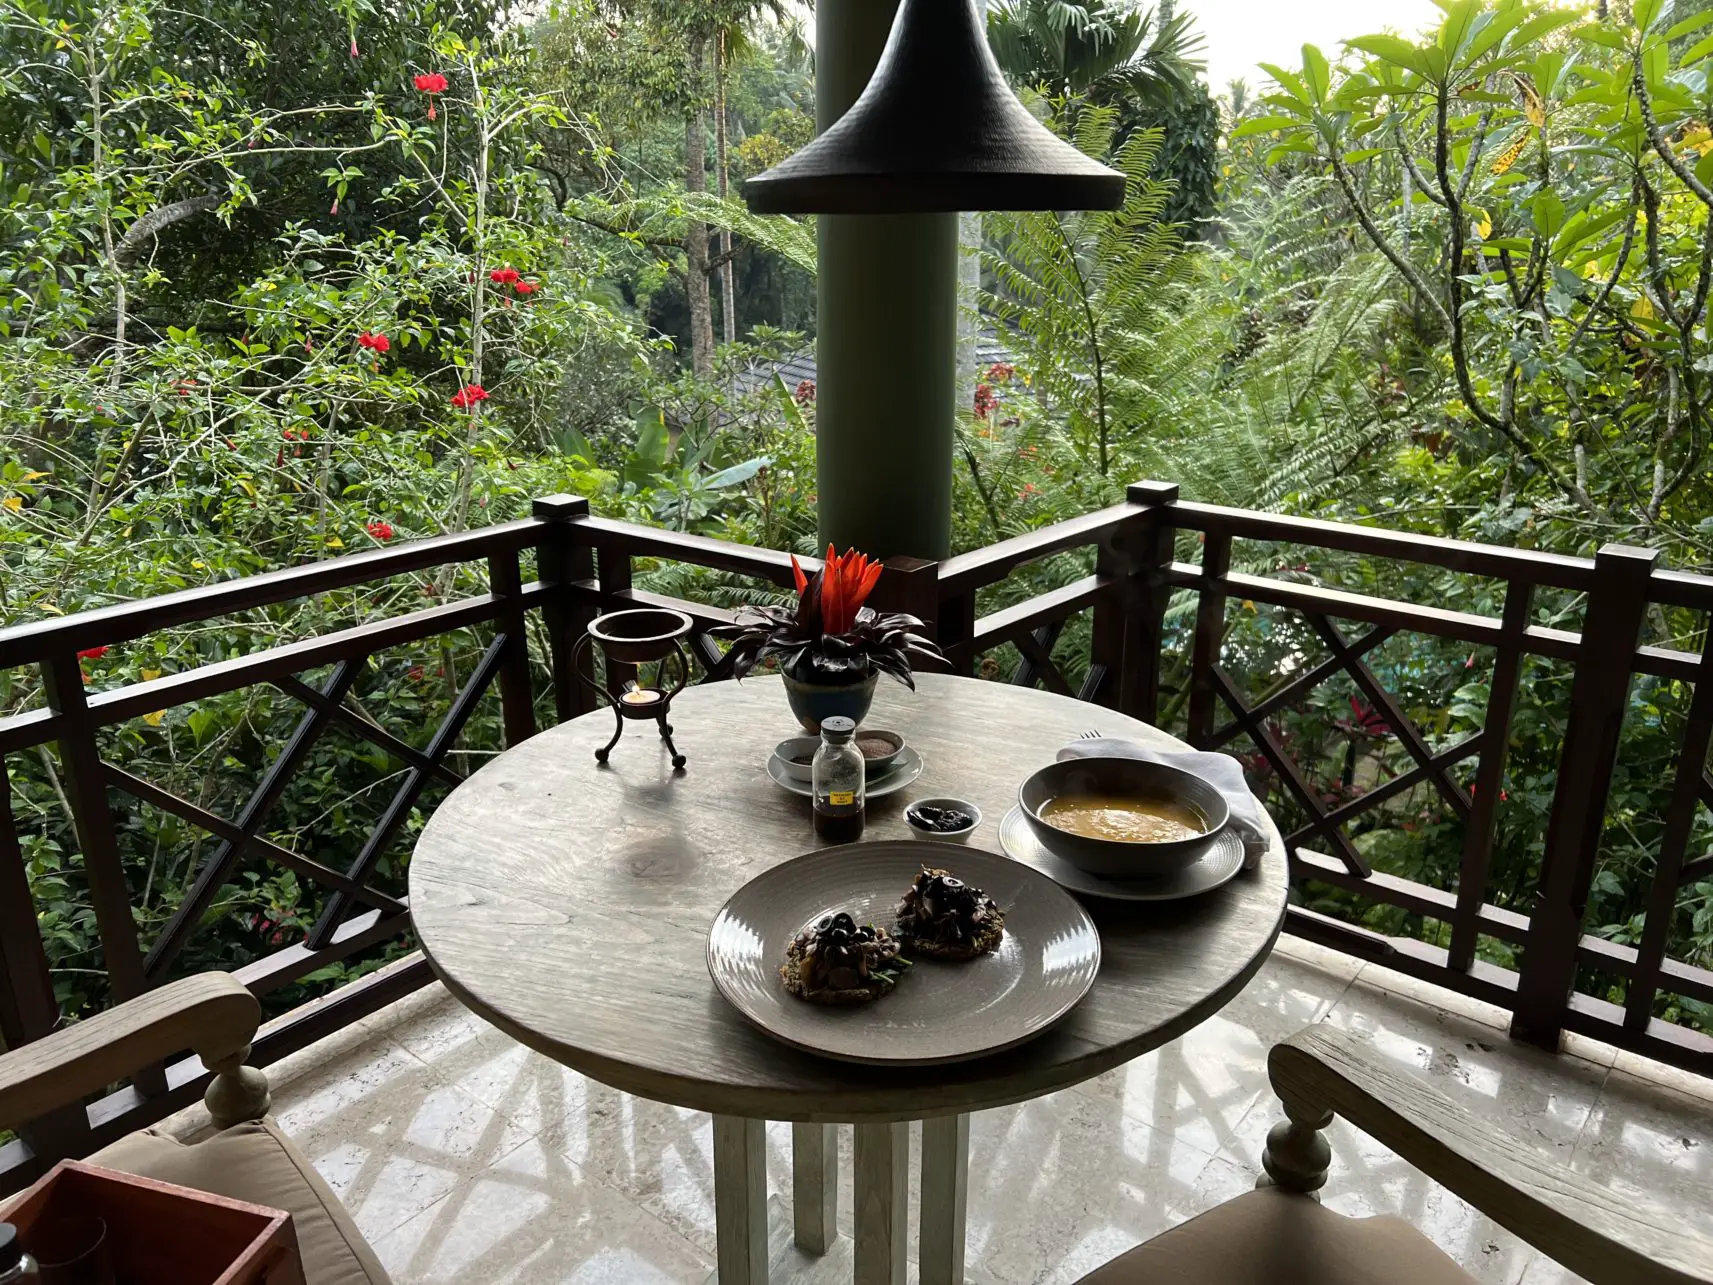 Balkon mit Blick ins Grüne vom Oneworld in Bali, Indoensien.